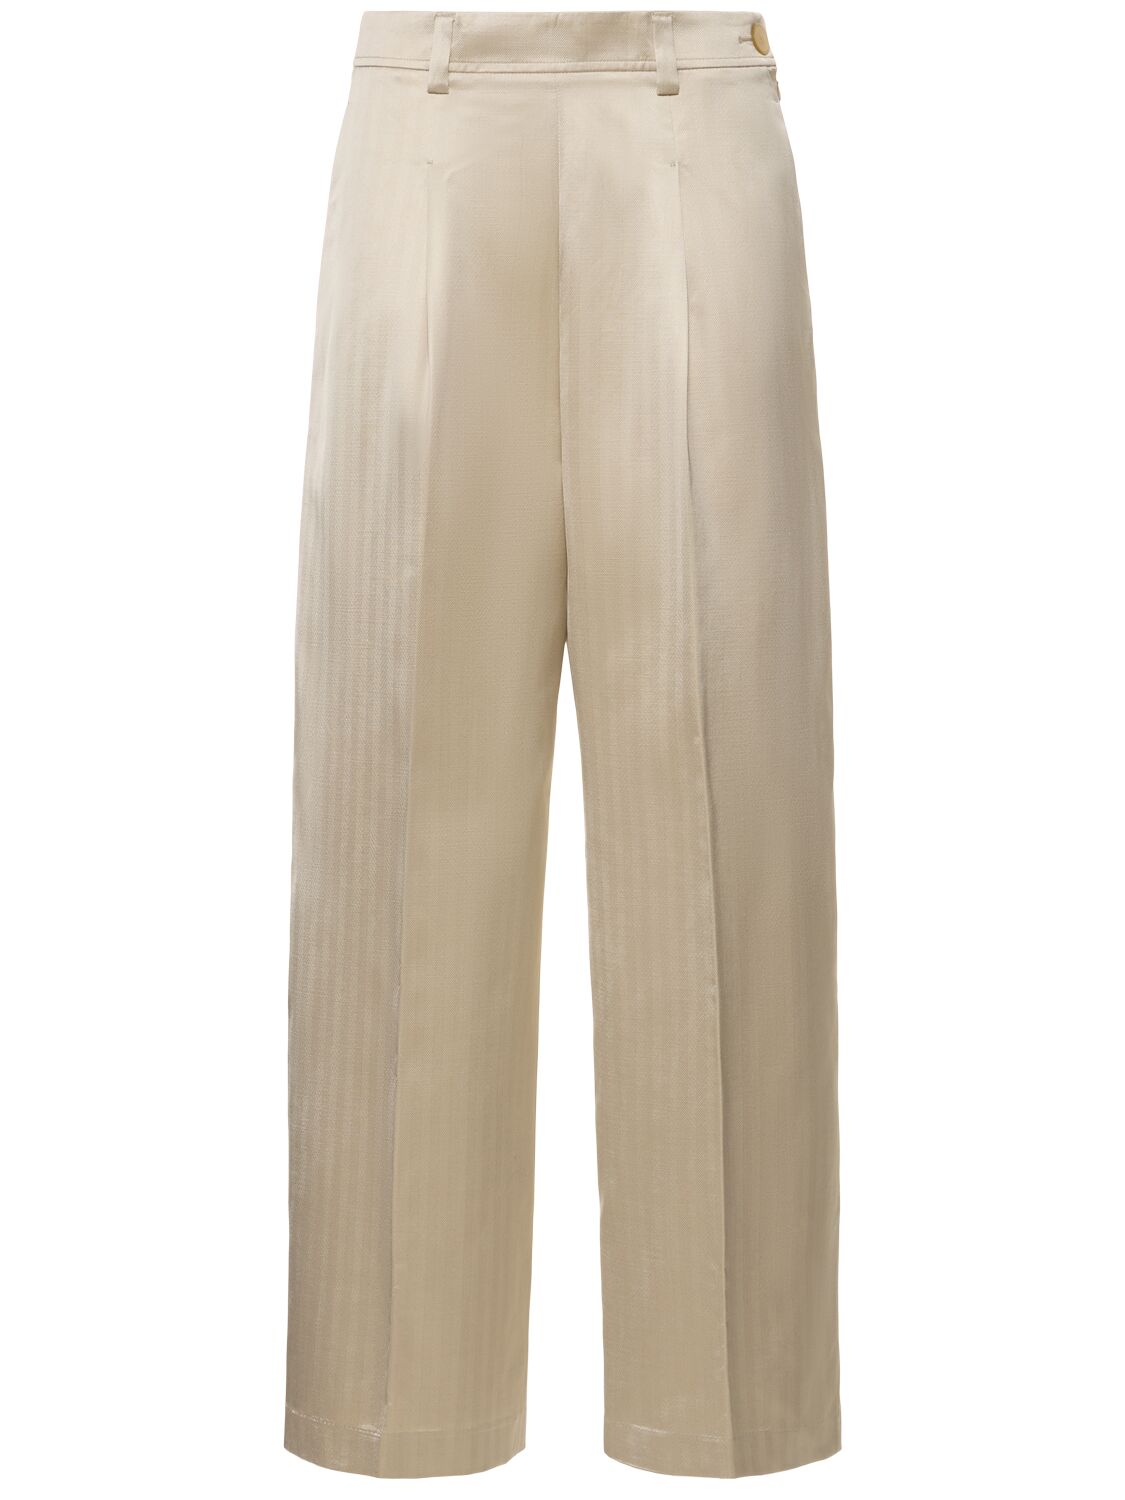 Image of Chic Herringbone High Waist Pants